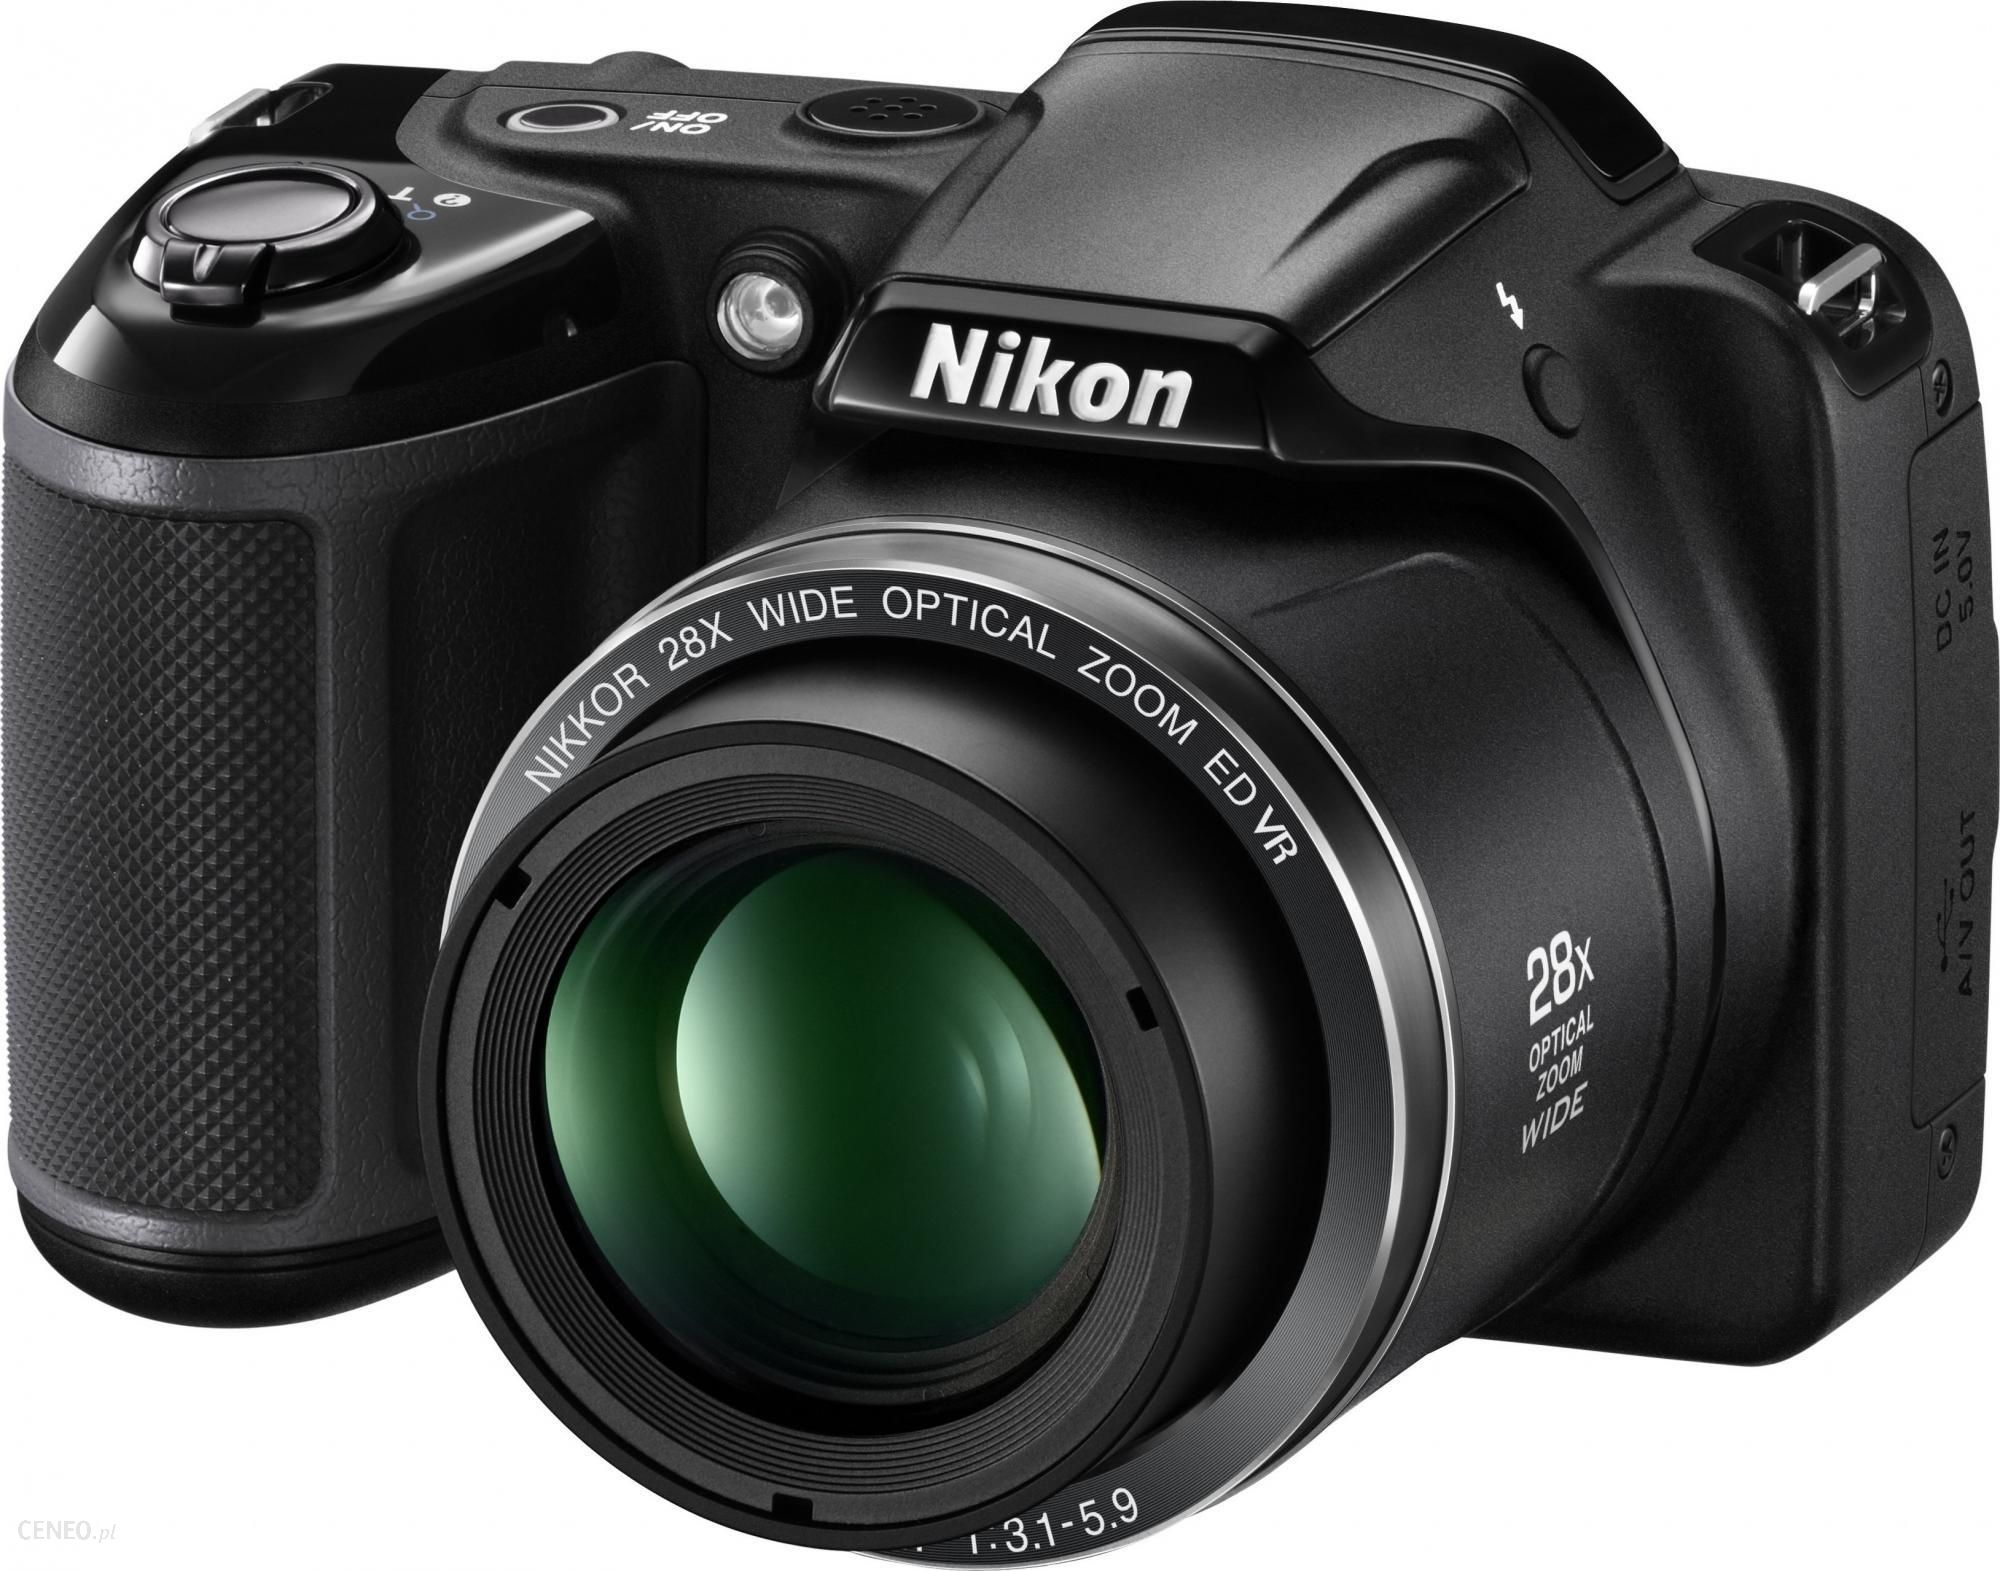 Aparat Cyfrowy Nikon Coolpix L340 Czarny Ceny I Opinie Na Ceneo Pl